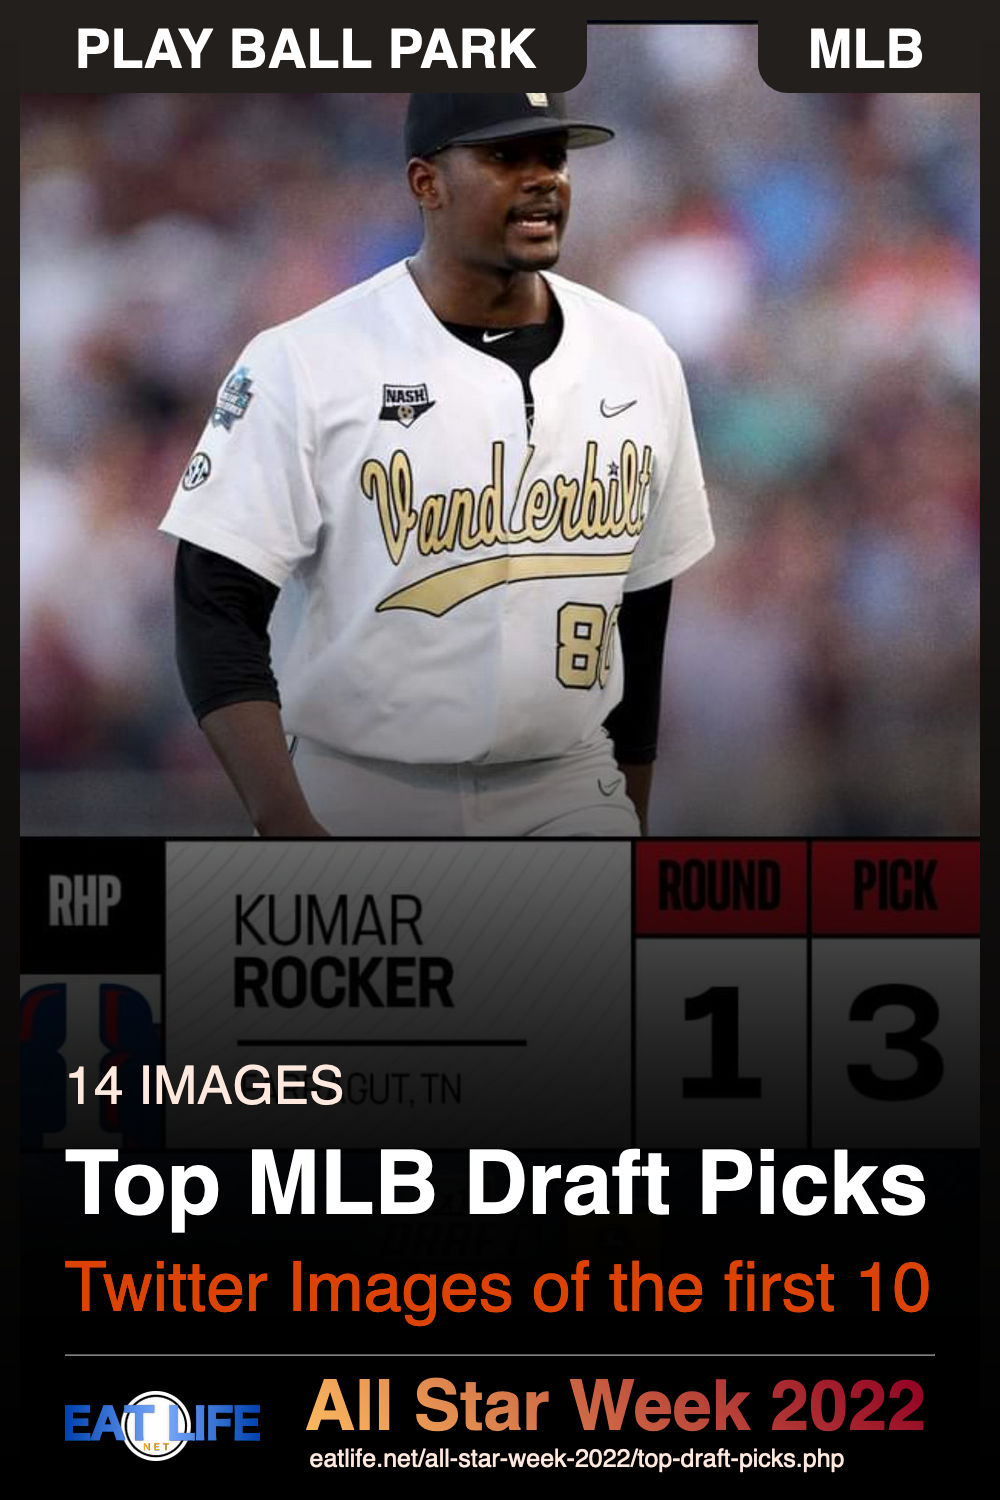 Top Draft Picks